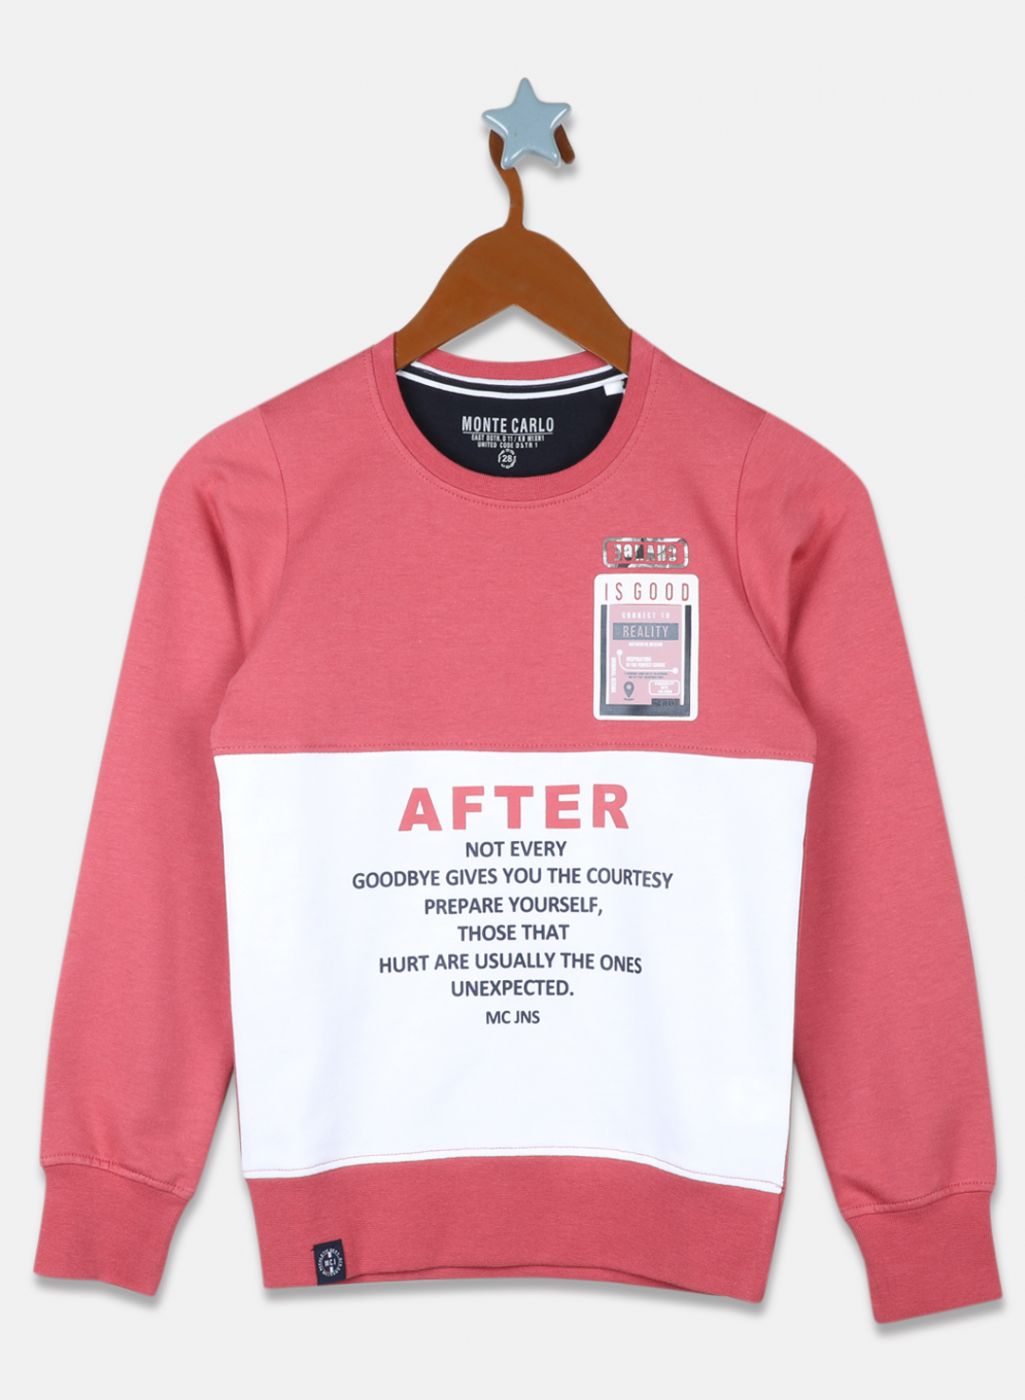 Boys Pink Printed Sweatshirt